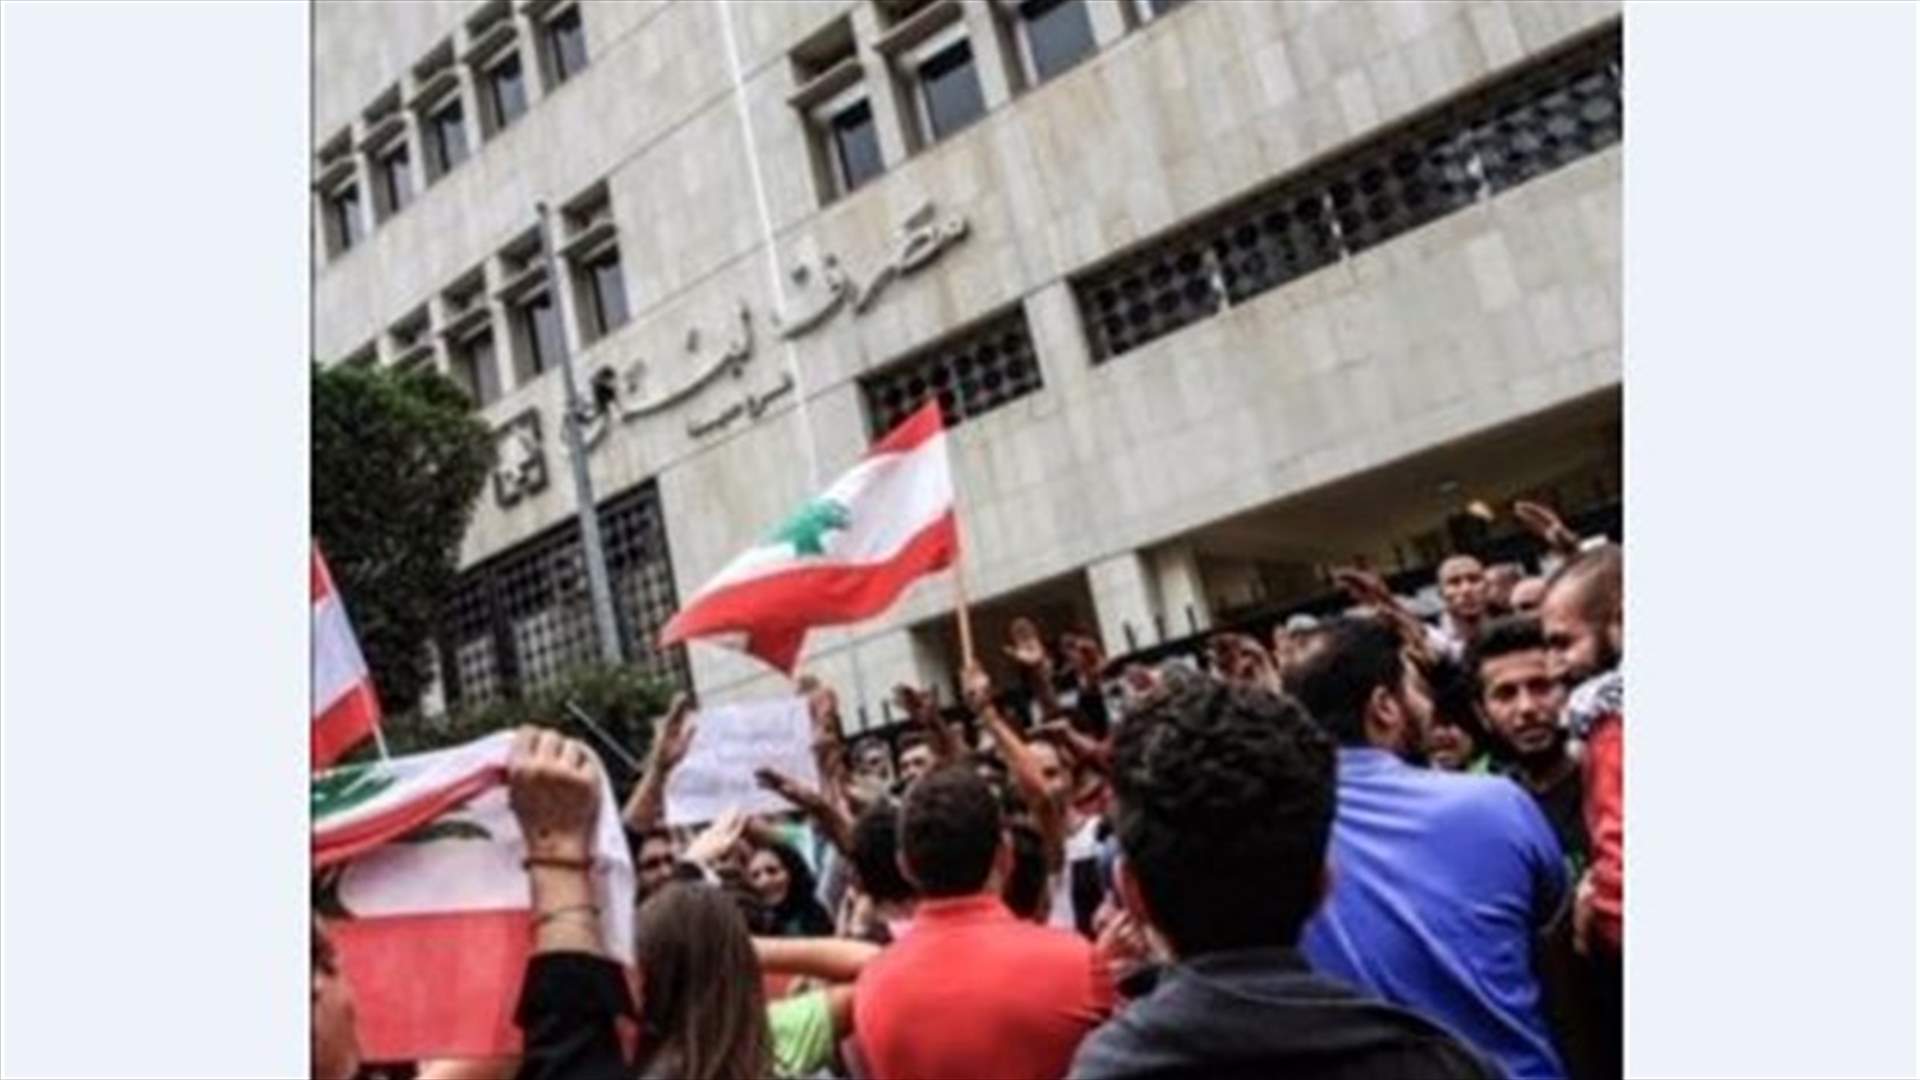 محتجون اعتصموا أمام مصرف لبنان منددين بالسياسة والهندسات المالية (صورة)